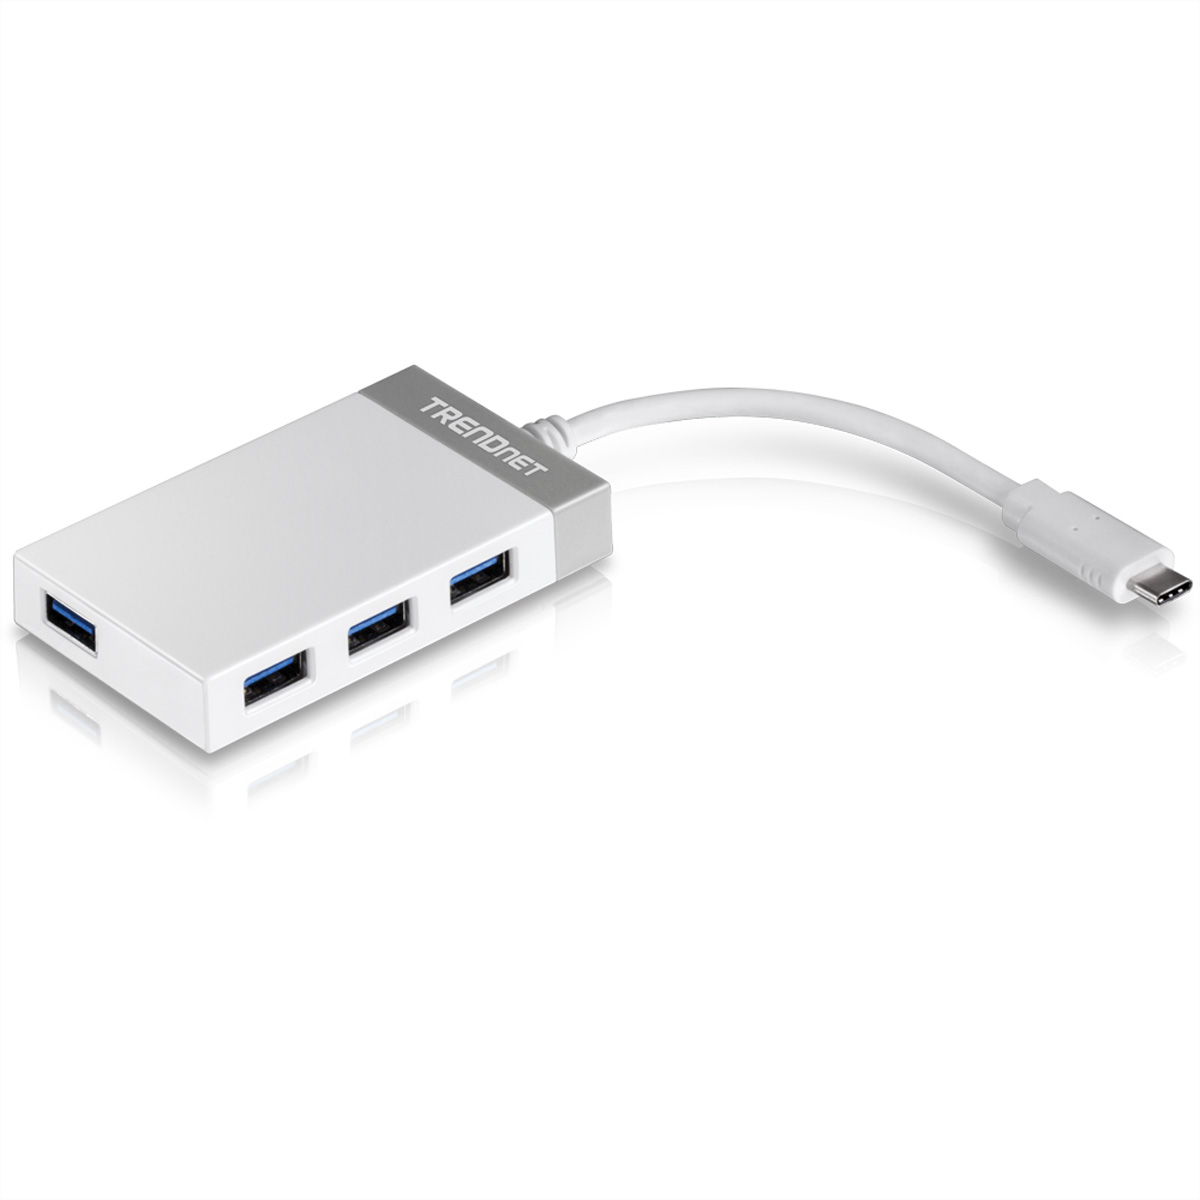 TRENDNET 4-Port Mini Hub, v2.0R, TUC-H4E USB grau Version USB-C Hub